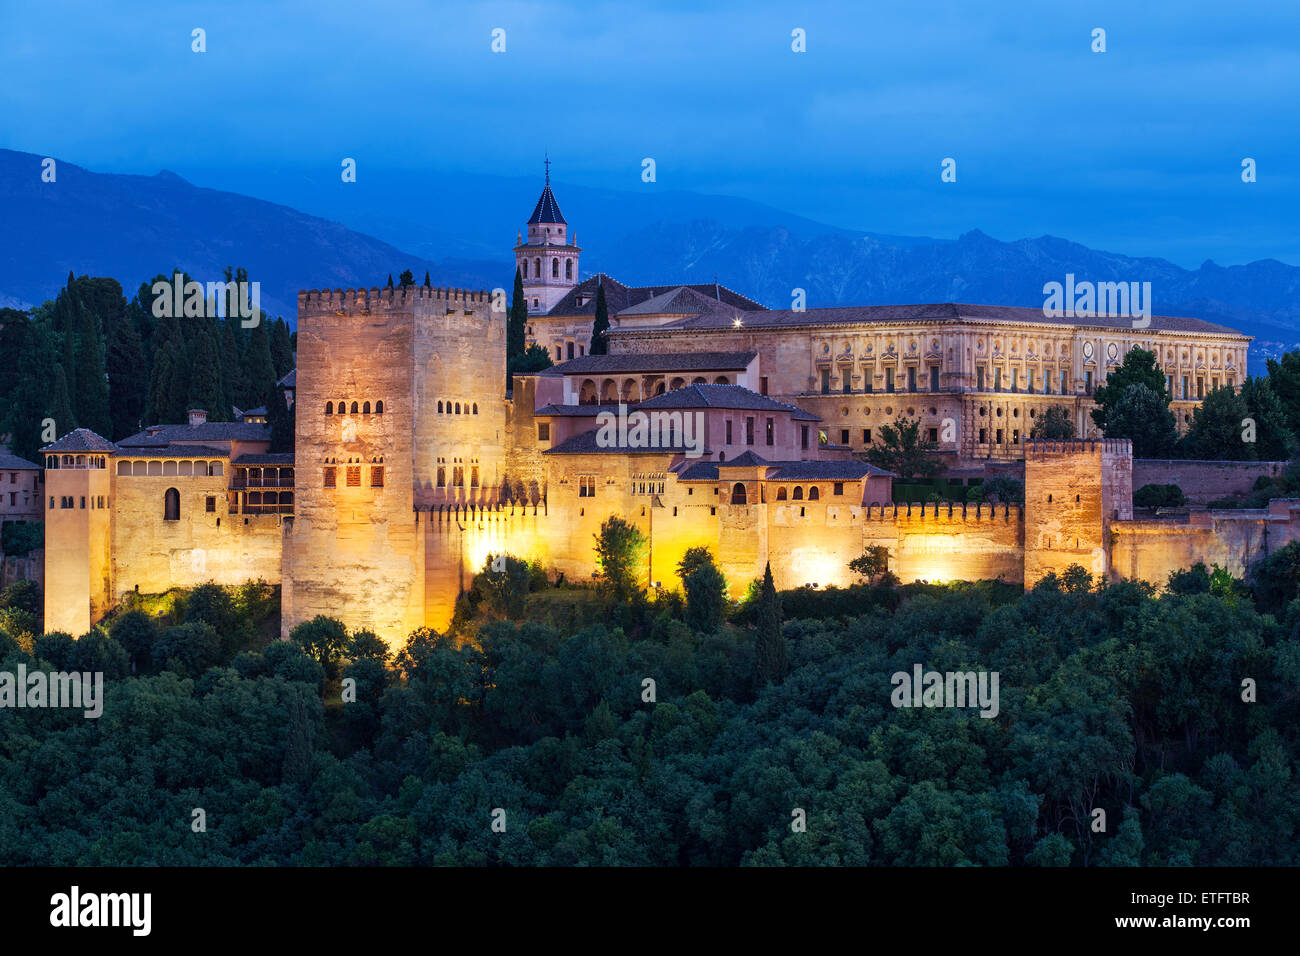 The Alhambra, Granada - Moorish palace Andalucia, Spain Stock Photo